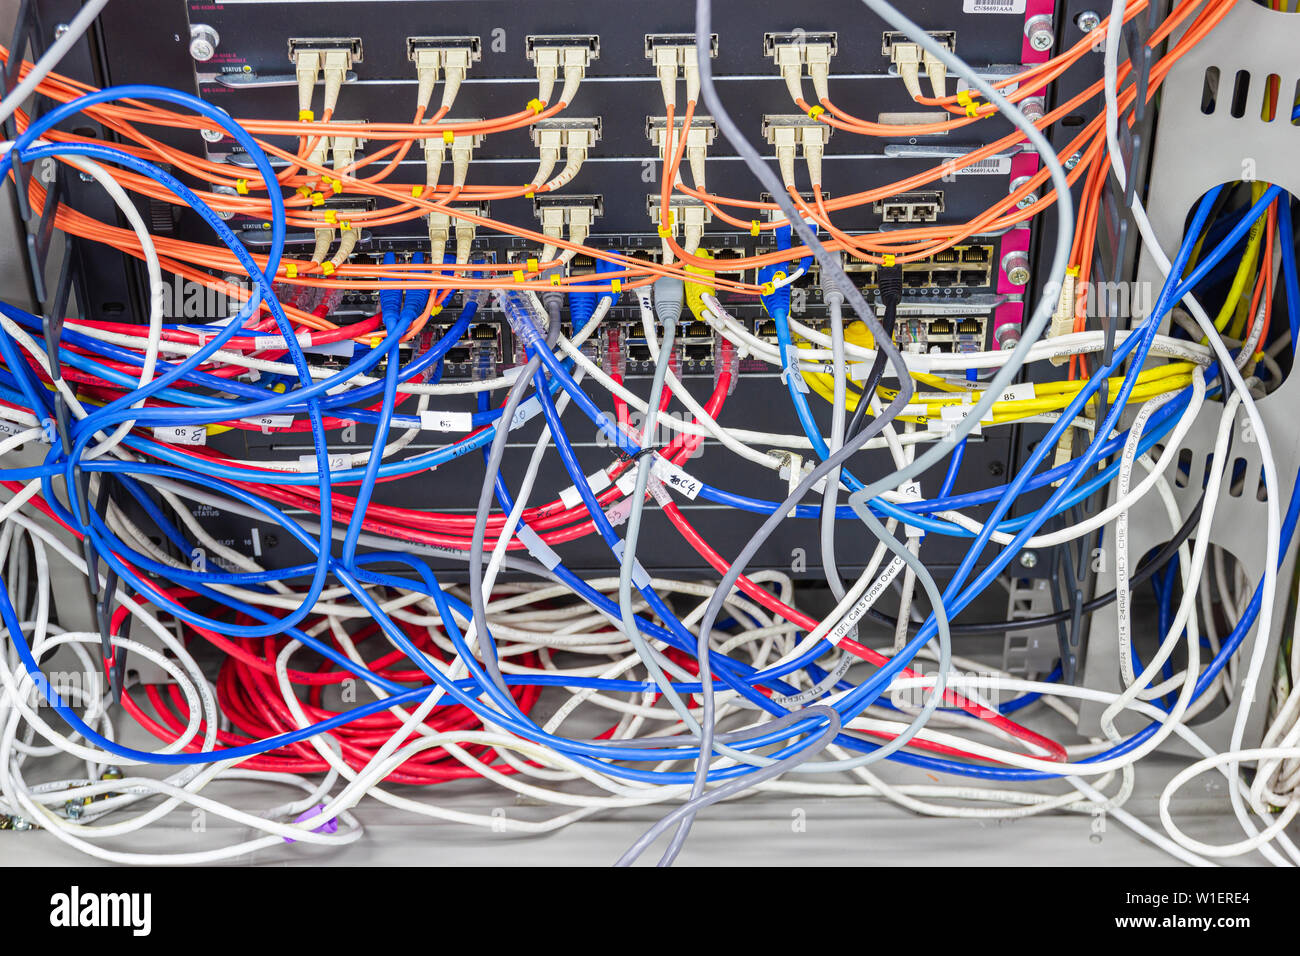 Bangkok Thailand: - Juni 25, 2019: - Kabel-Netzwerk im Serverraum Kabelsalat von Schlecht verlegtes Kabel Konzept organisierten Verkabelung im Serverraum Stockfoto